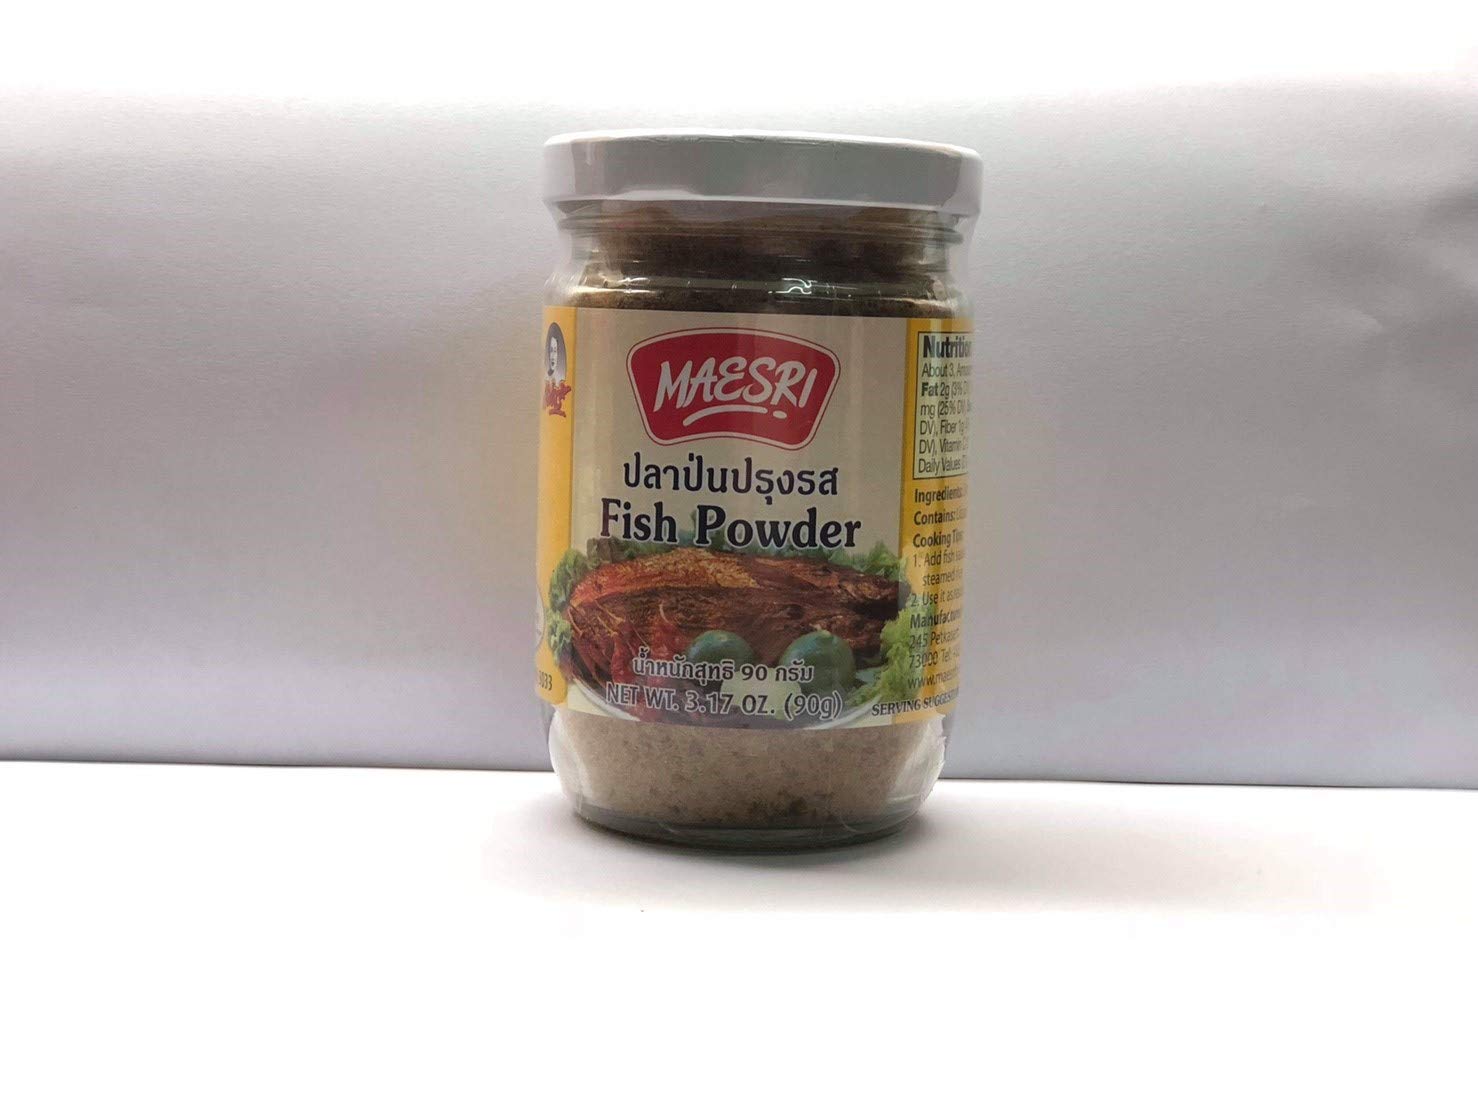 Maesri Fish Powder 3.17oz/90g Product of Thailand